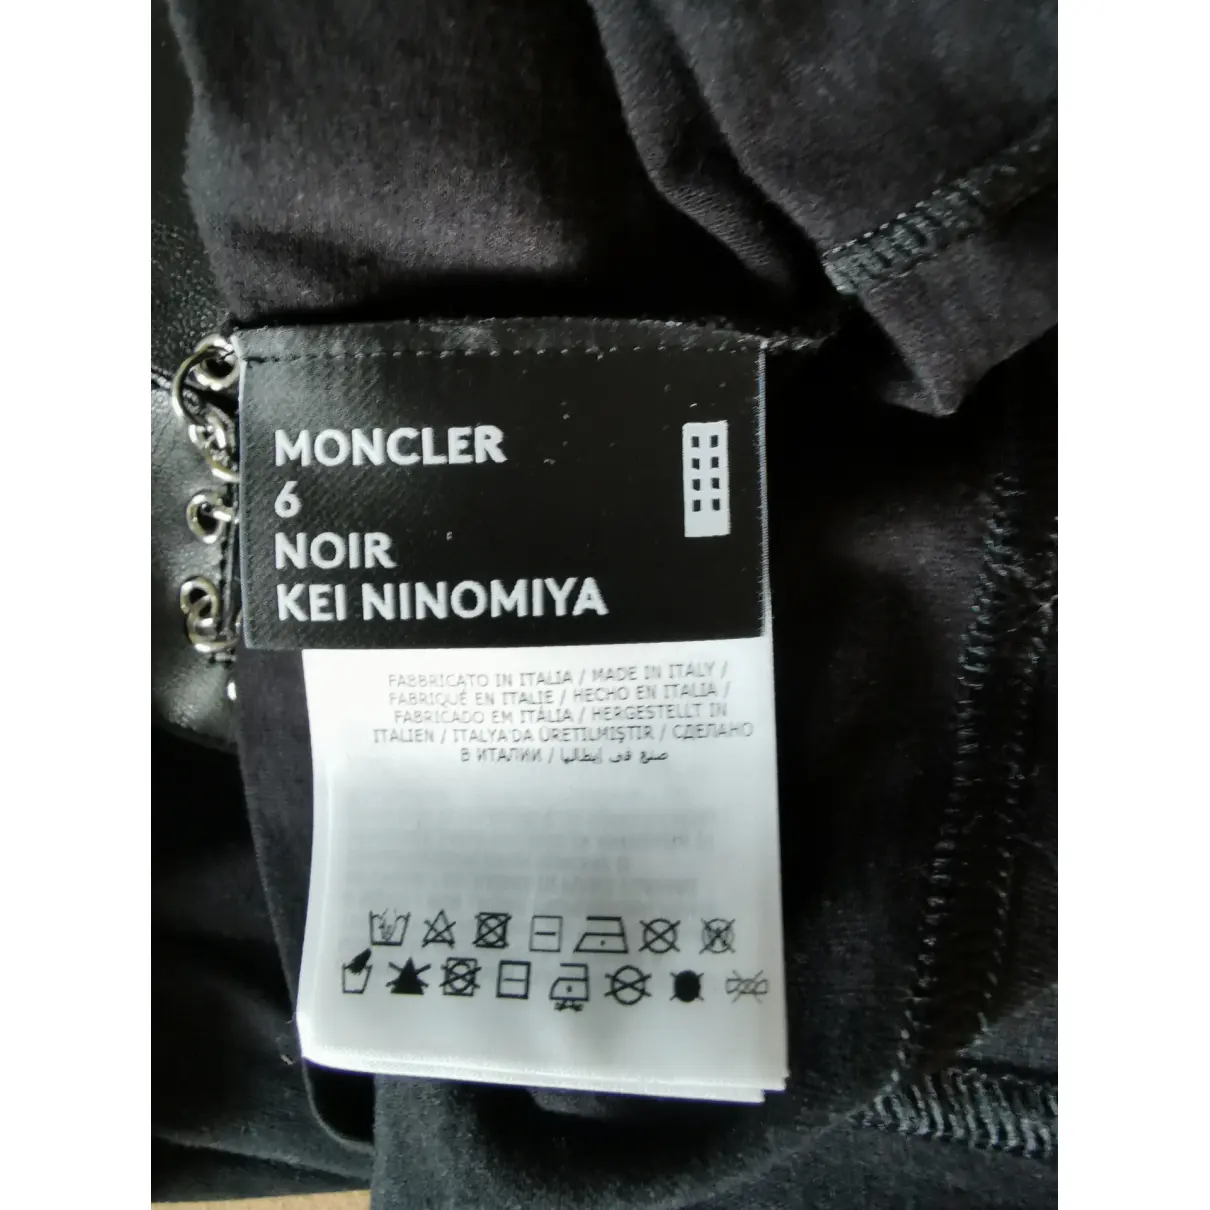 Moncler n°6 Noir Kei Ninomiya t-shirt Moncler Genius